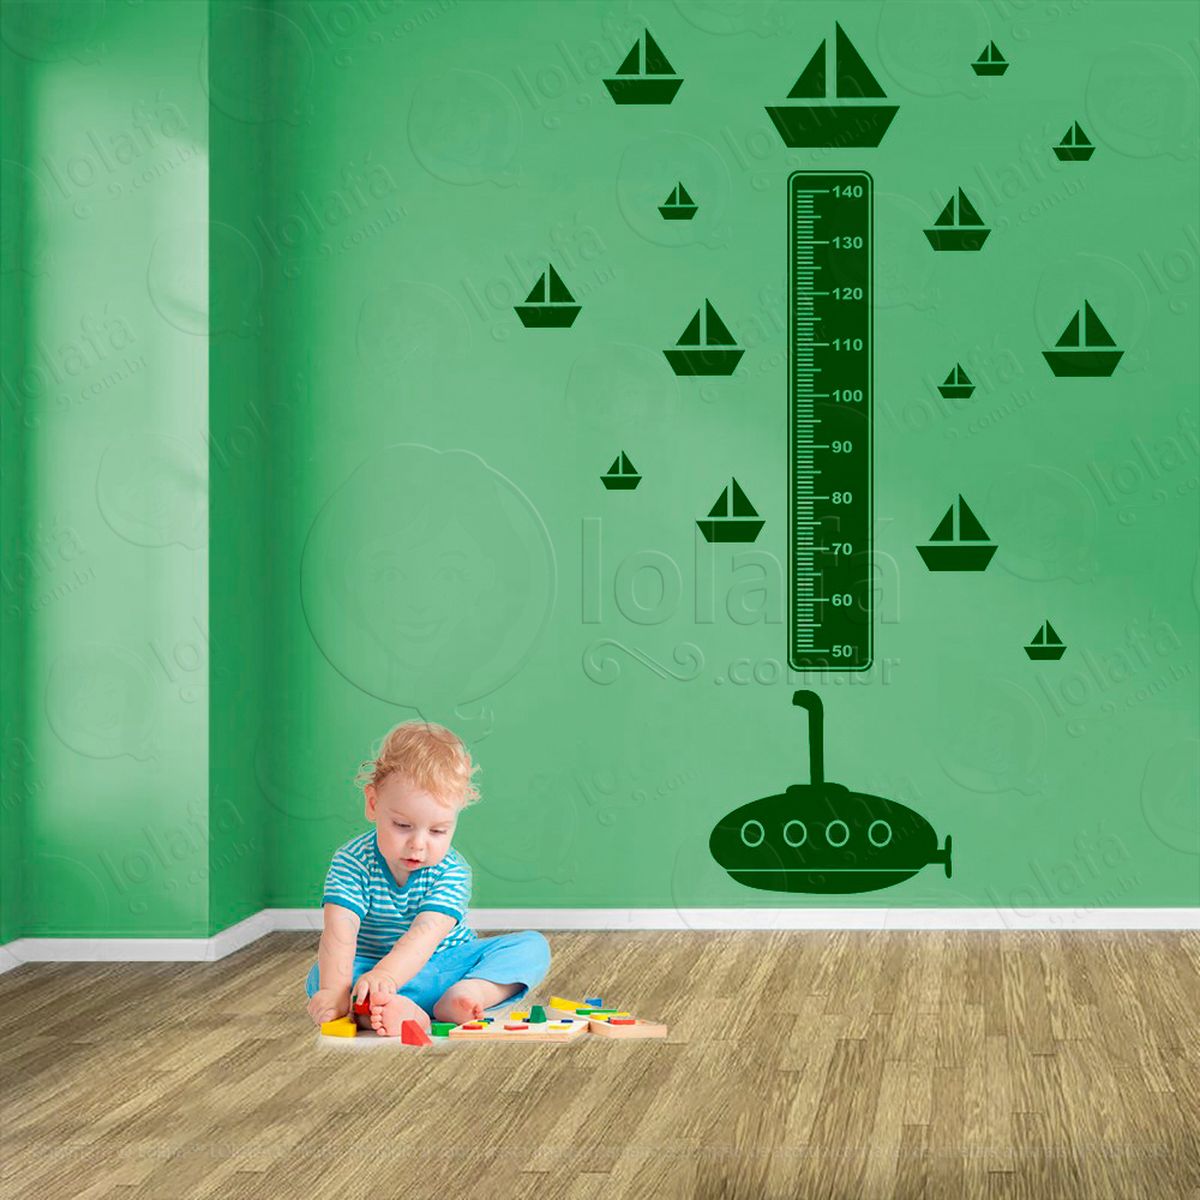 submarino e barcos adesivo régua de crescimento infantil, medidor de altura para quarto, porta e parede - mod:1469